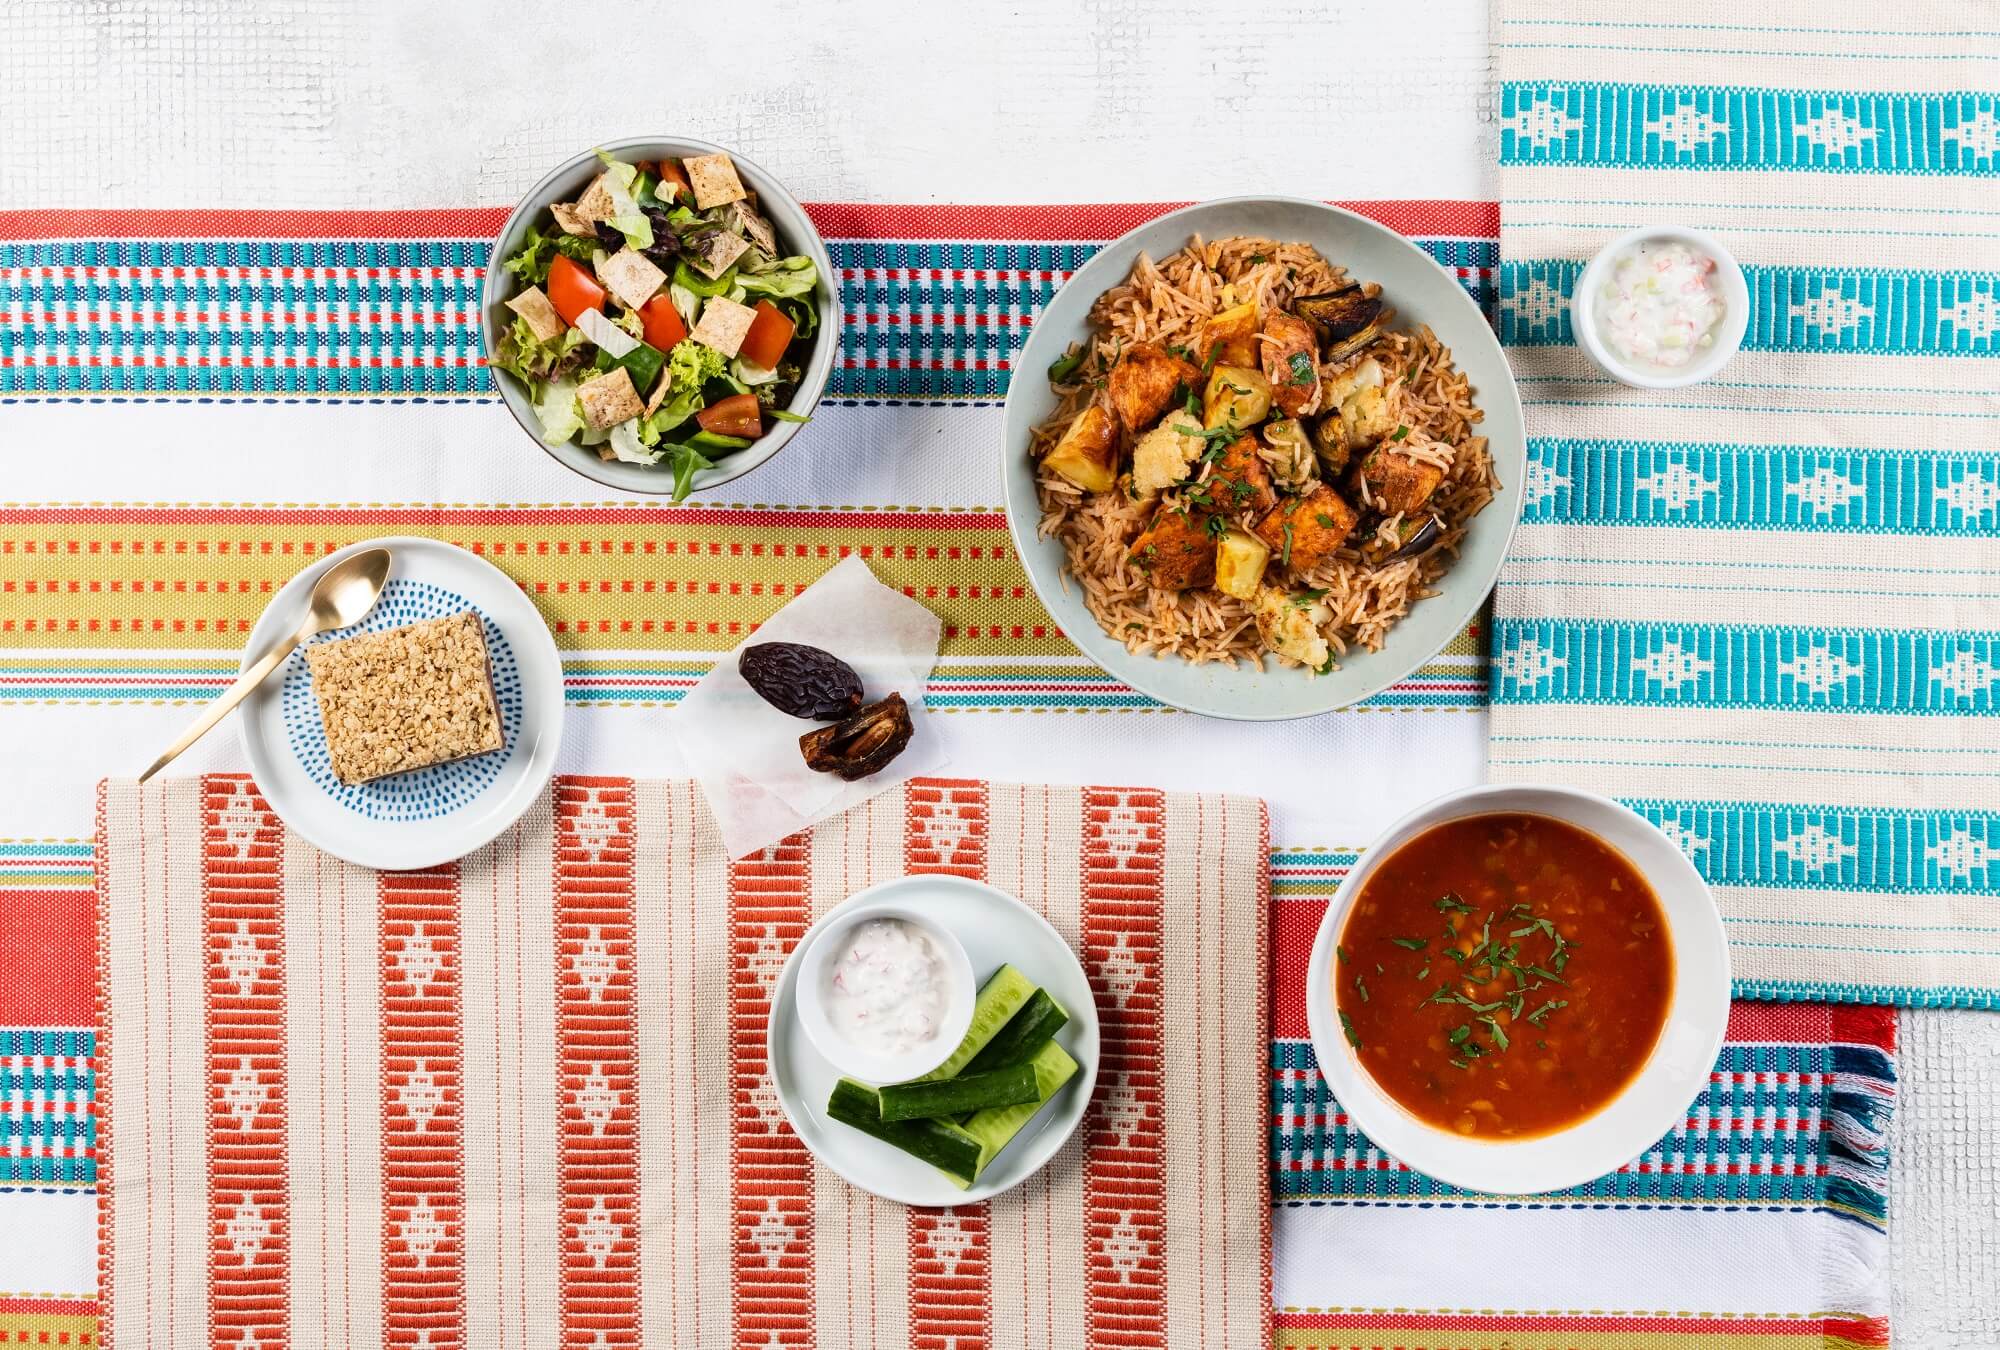 مطاعم كي كال تقدم قائمة طعام جديدة كلياً لشهر رمضان المبارك